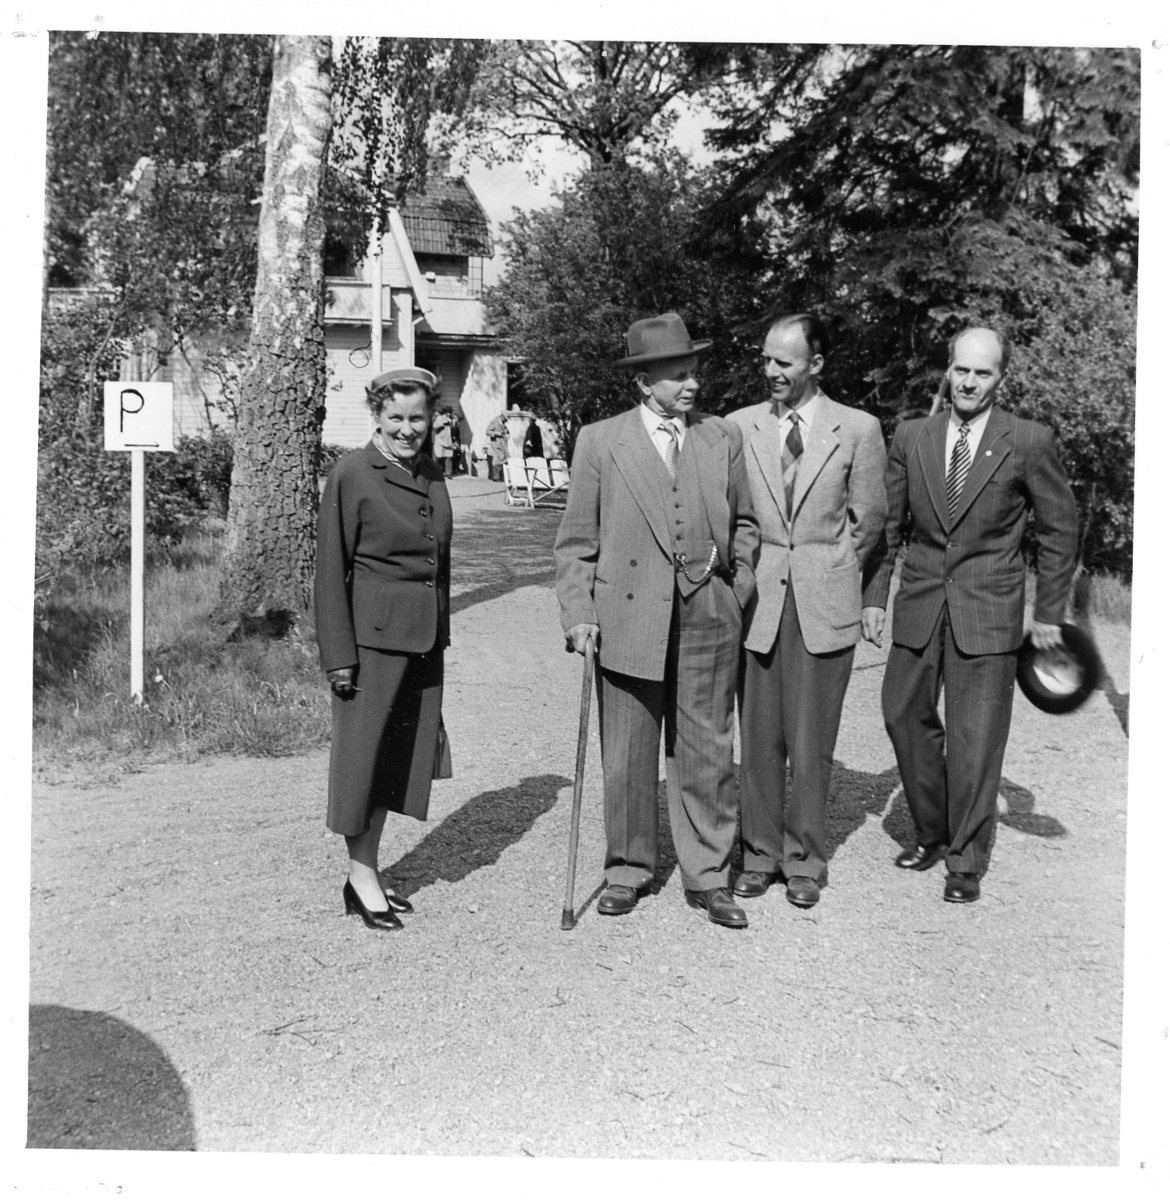 Röda Kors-utflykt till okänd ort 1950-tal. Från vänster: 1. Ingrid "Lillan" Aud. 2. Otto Emil Ottosson "Starbäck" (1881-1958). 3. Gunnar Gunnarsson. 4. Gunnar Nilsson (1909-2006).